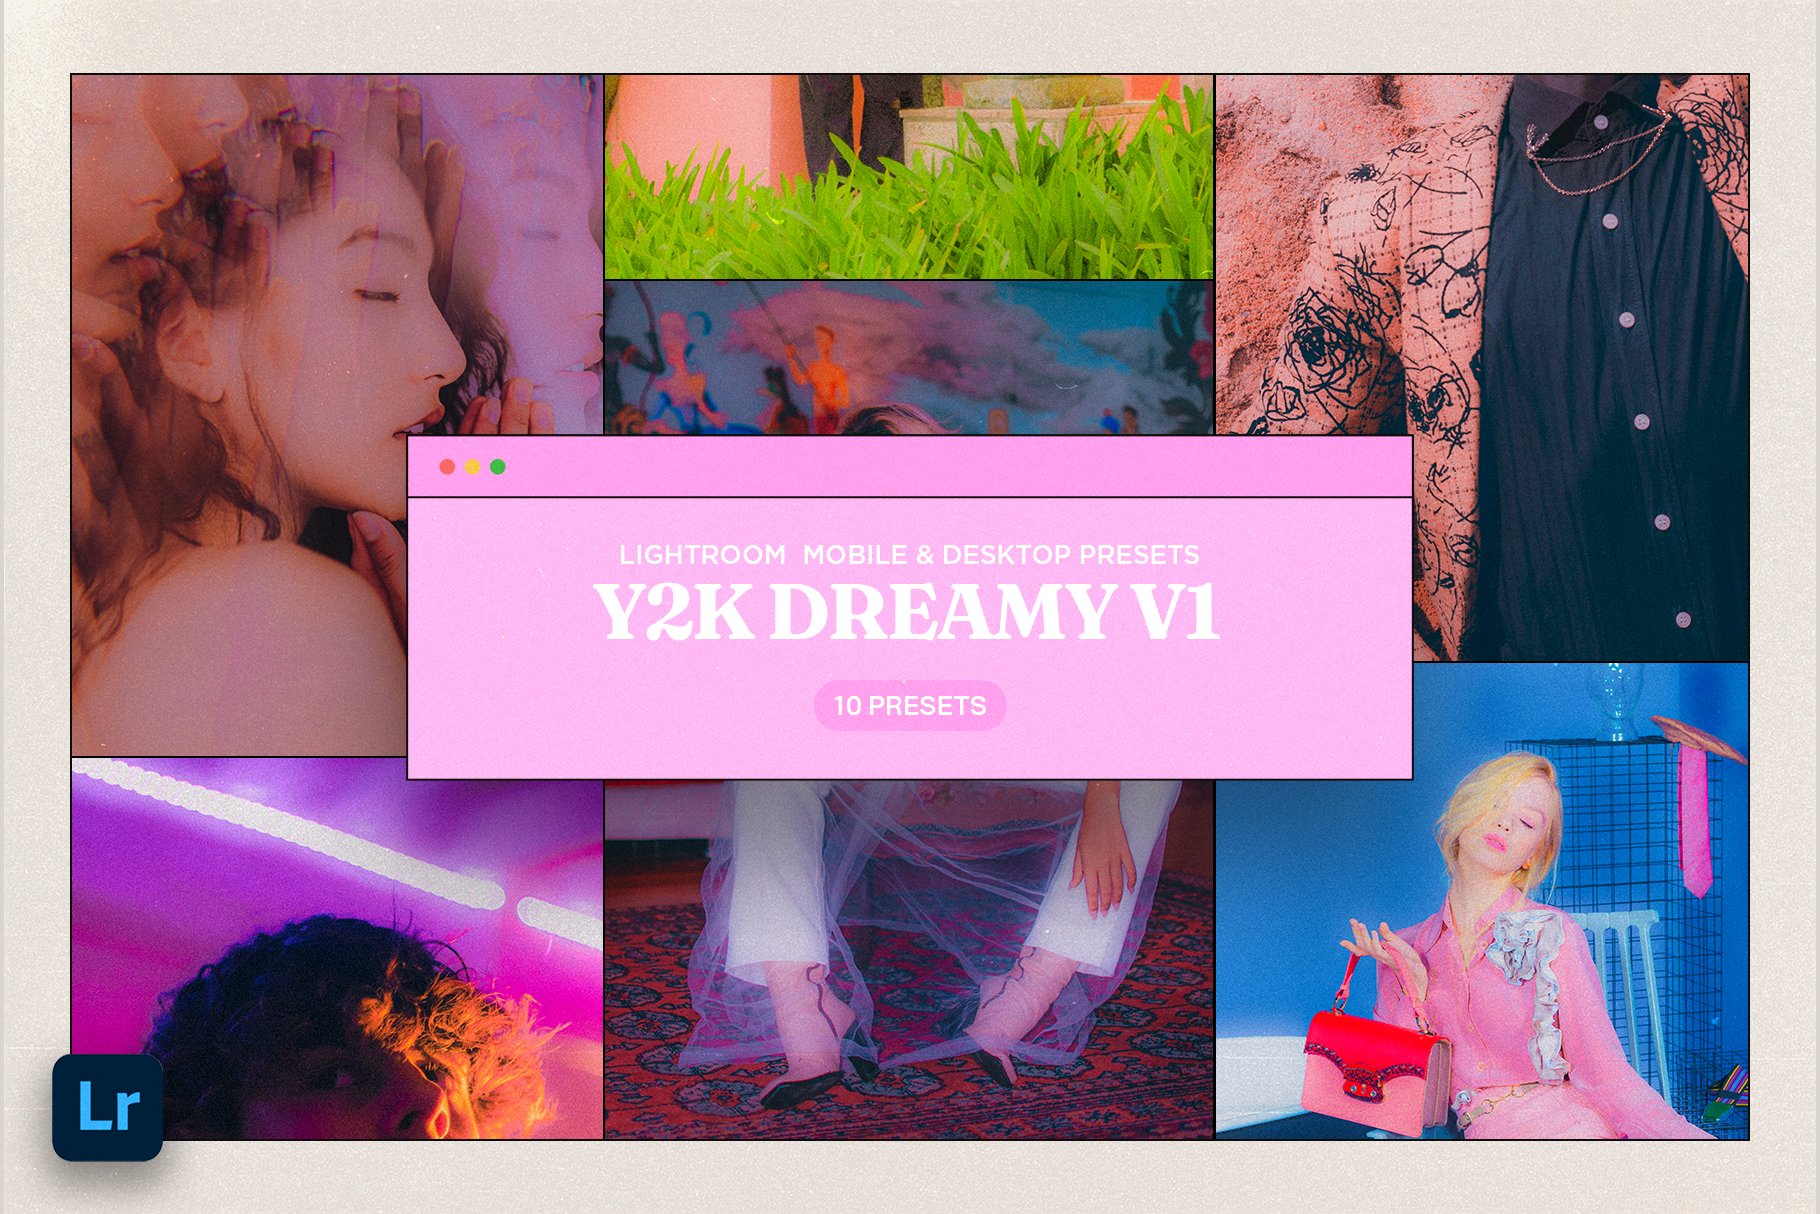 Y2K Dreamy Lightroom Presetscover image.